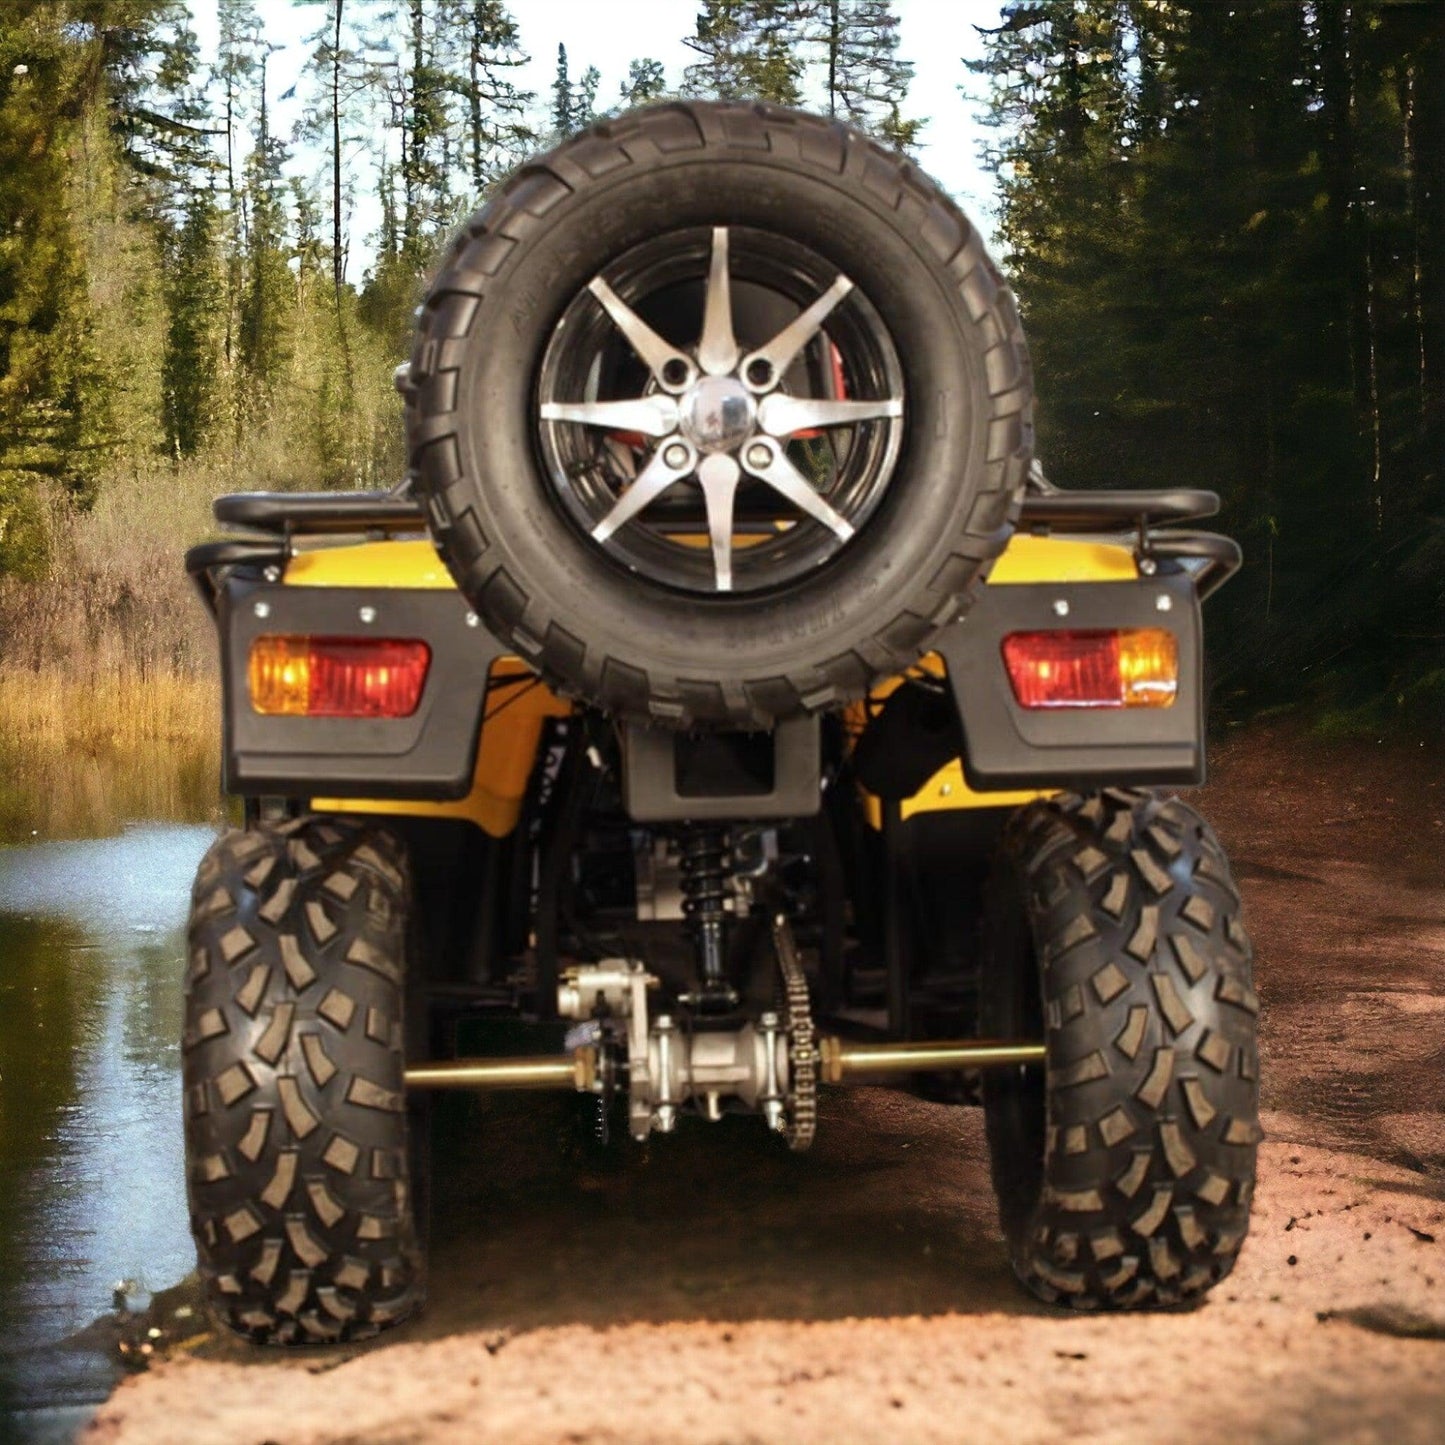 PATOYS | Super Hunk Atv 250cc (Yellow) ATVs & UTVs PATOYS